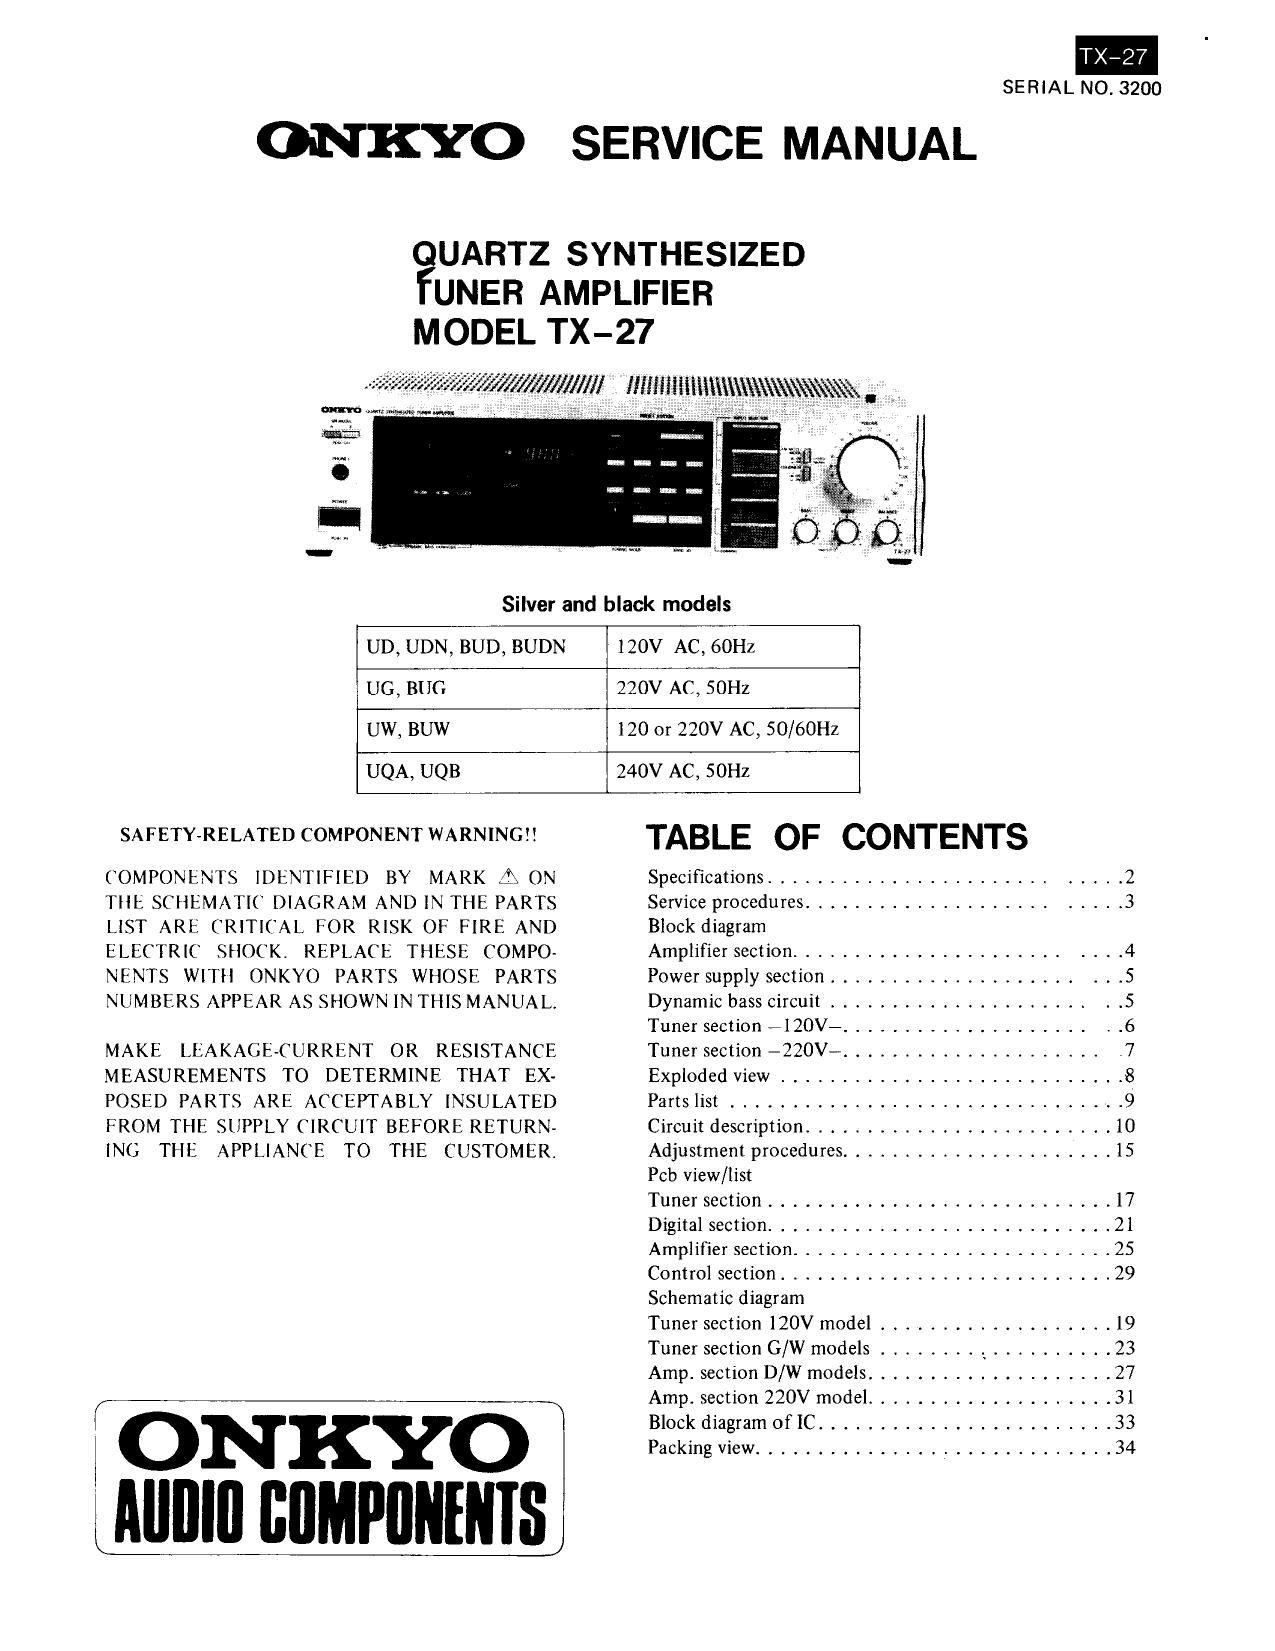 Onkyo TX 27 Service Manual